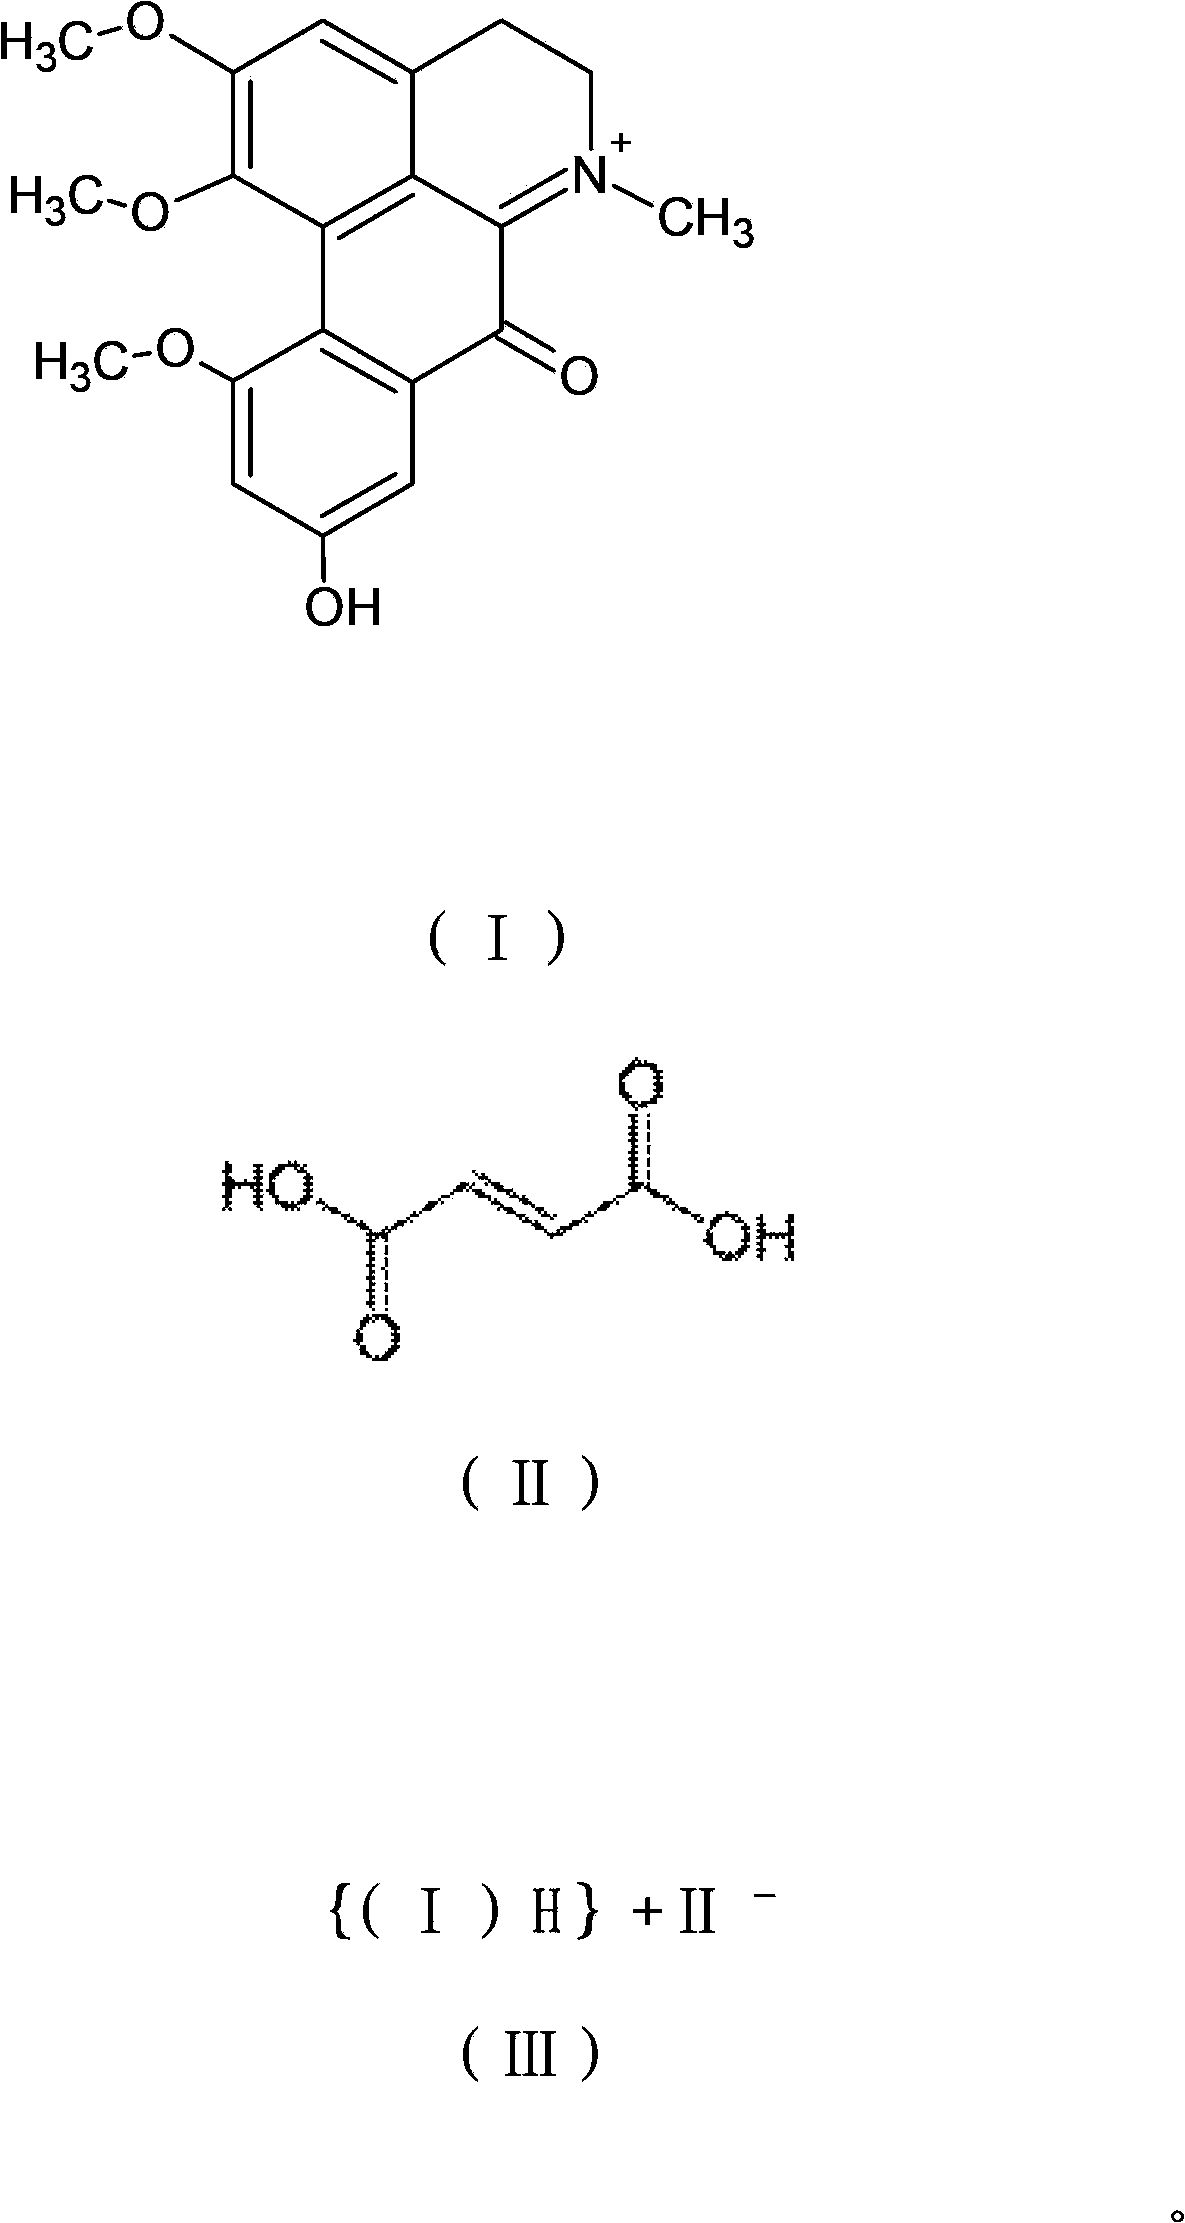 Dicranostigma leptopodum berberrubine salt derivative